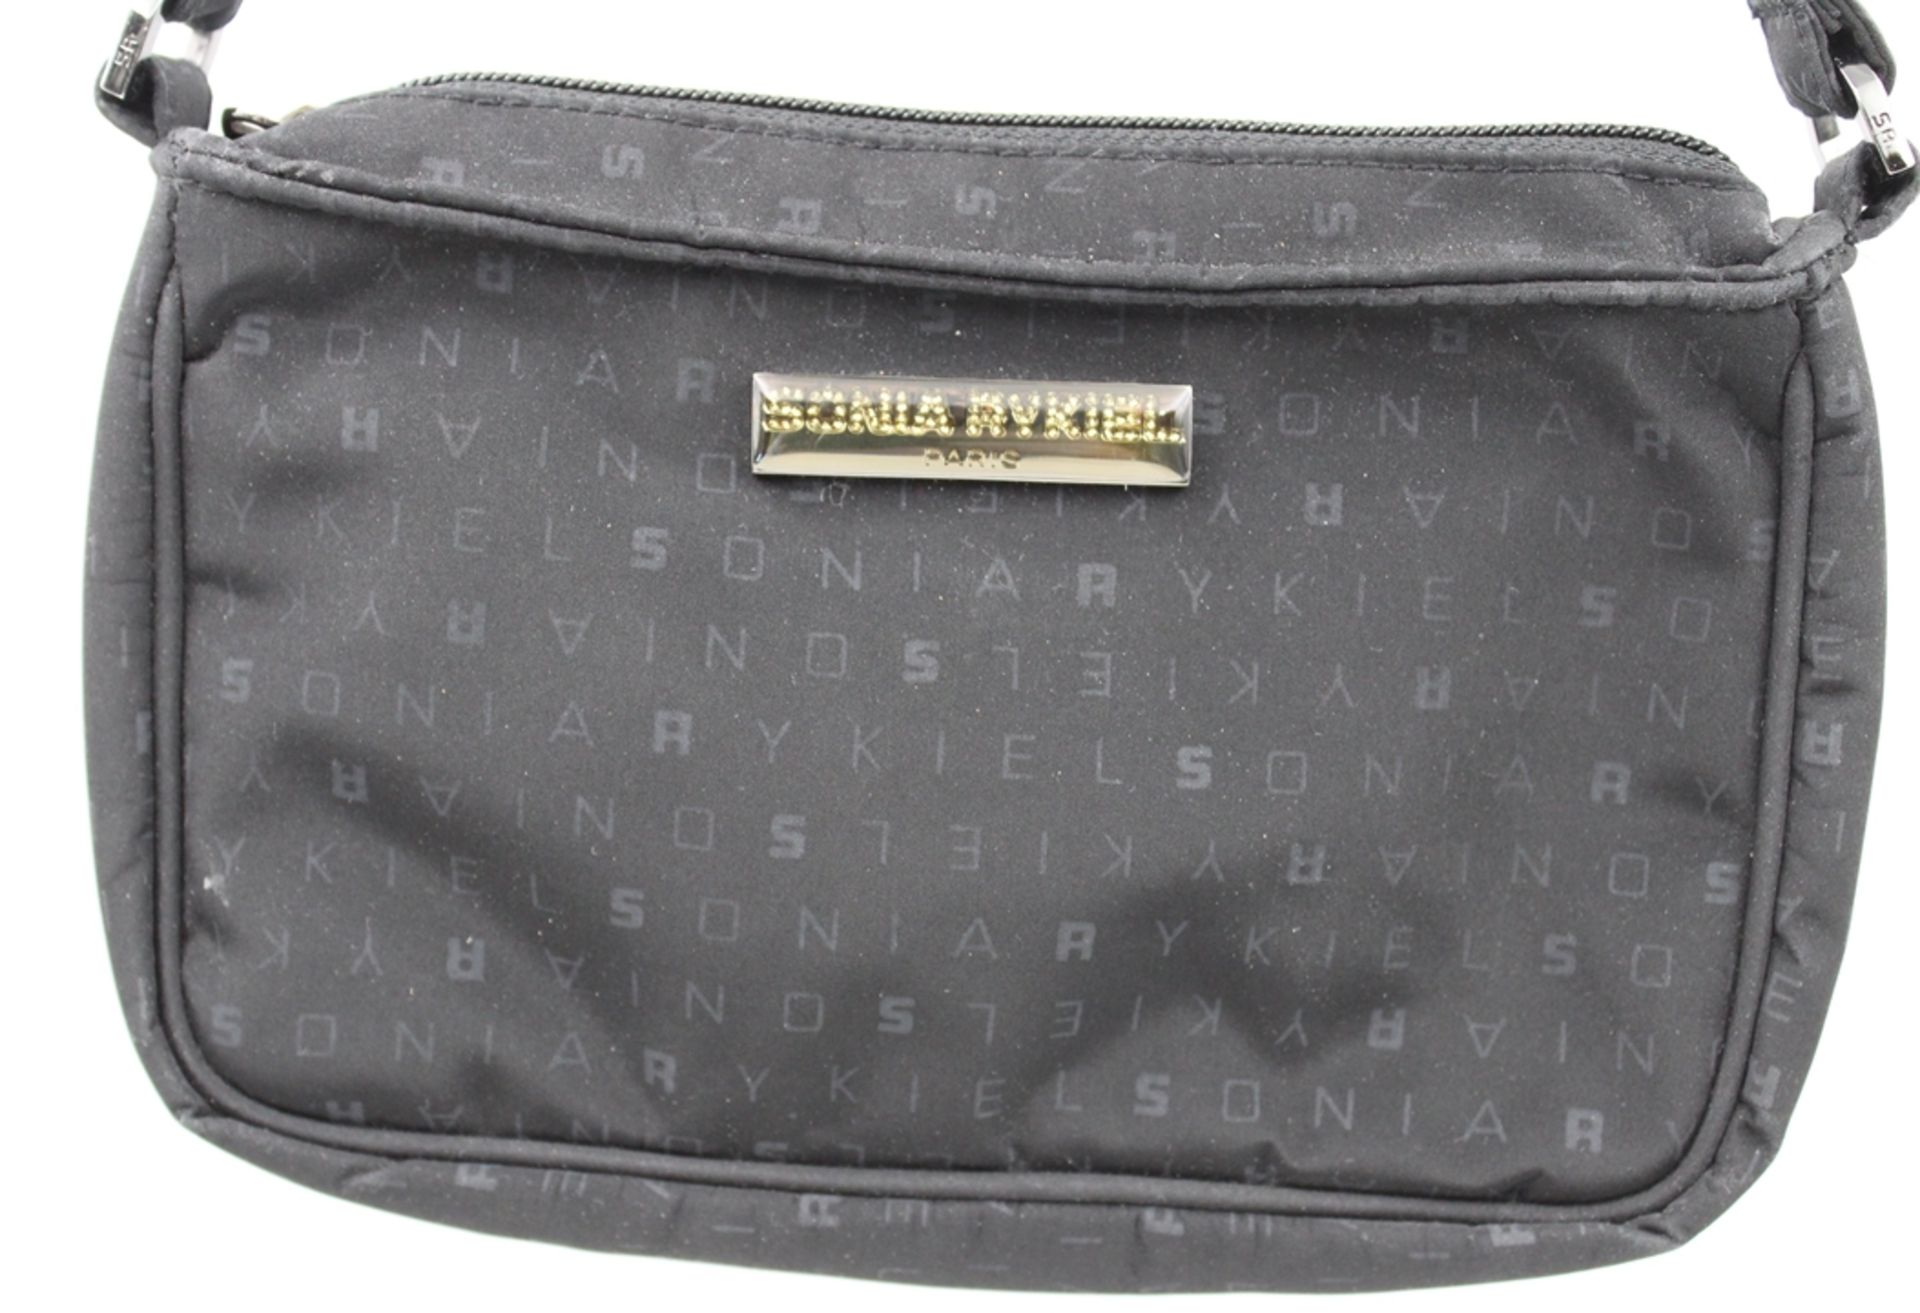 kl. Handtasche, Sonia Rykiel, schwarz, Tragespuren, ca. 14 x 22cm. - Bild 2 aus 6